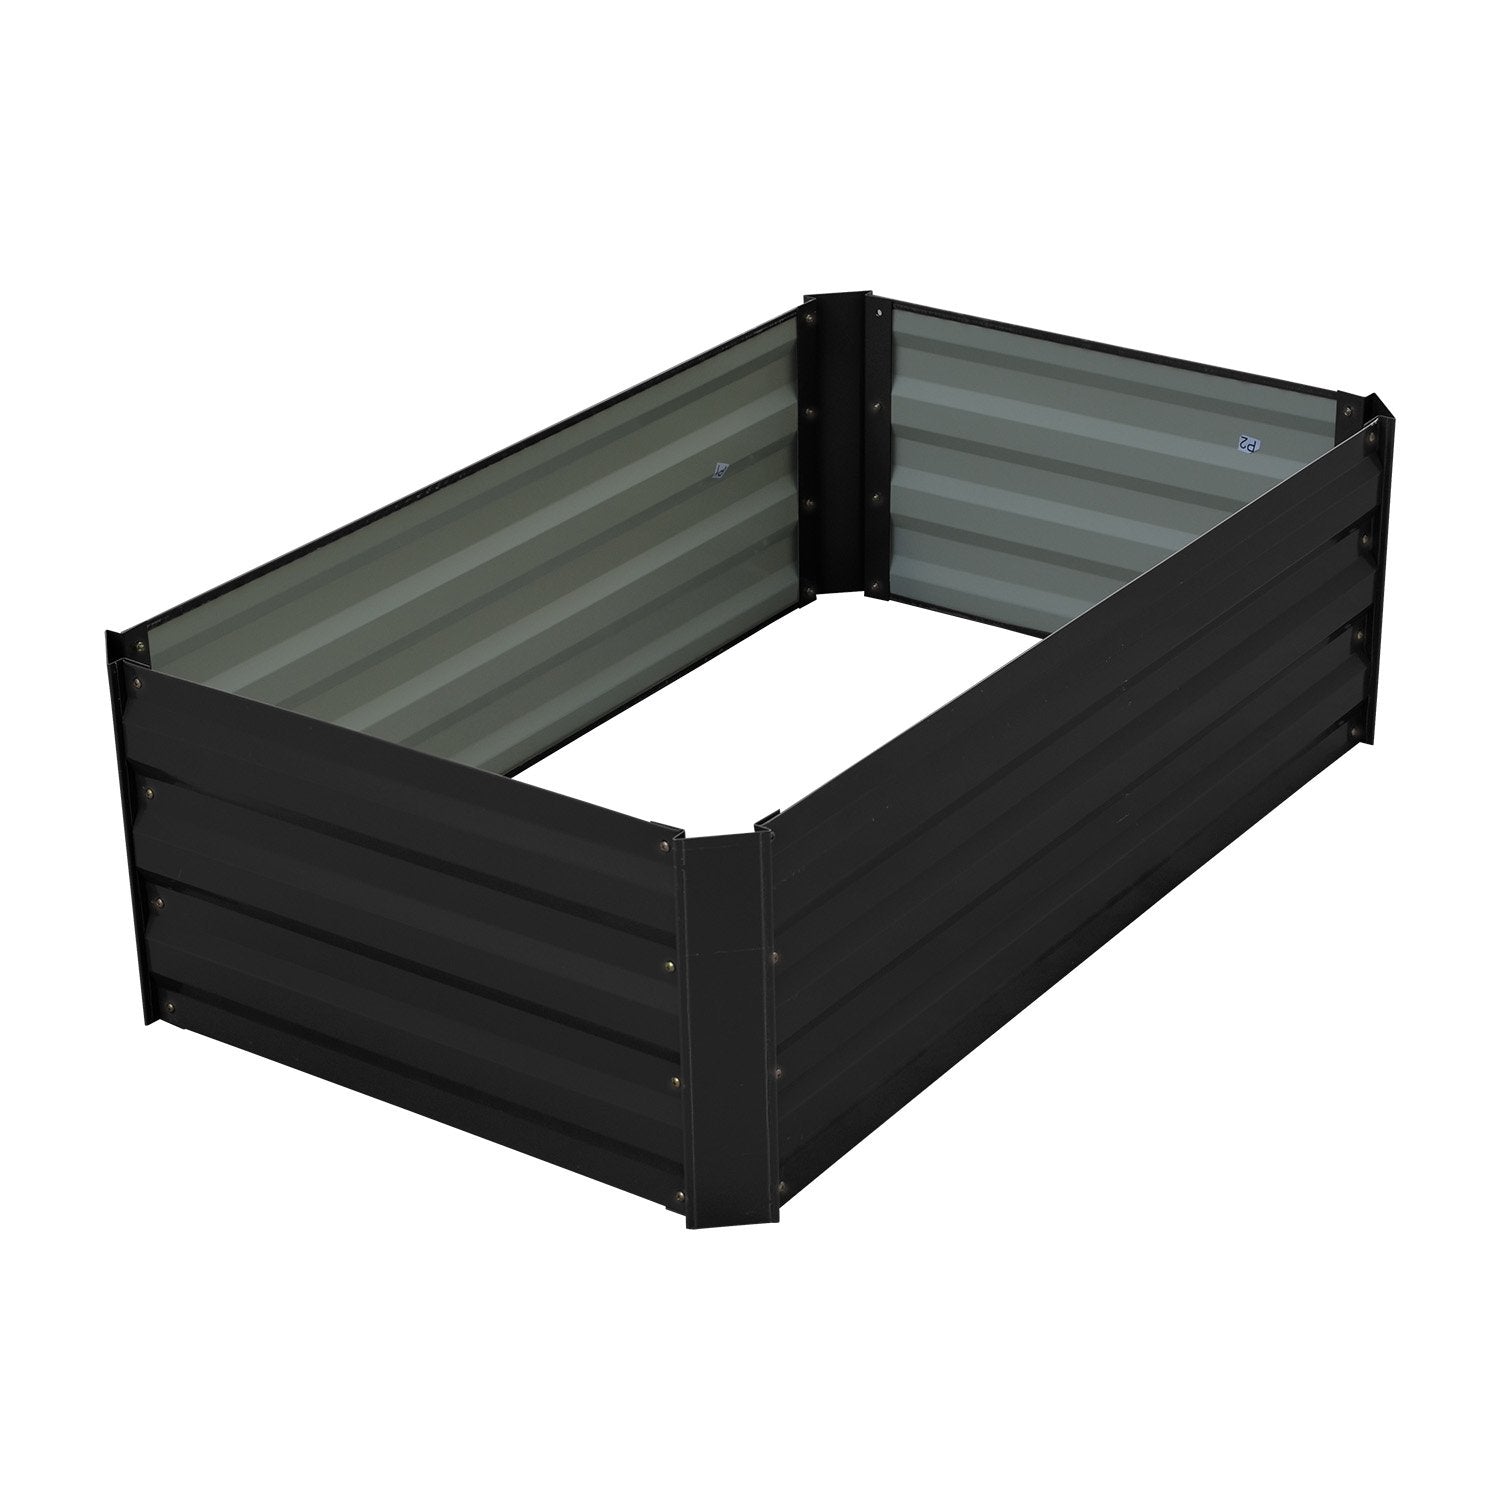 Garden Bed 100 x 60 x 30cm Galvanized Steel - Black